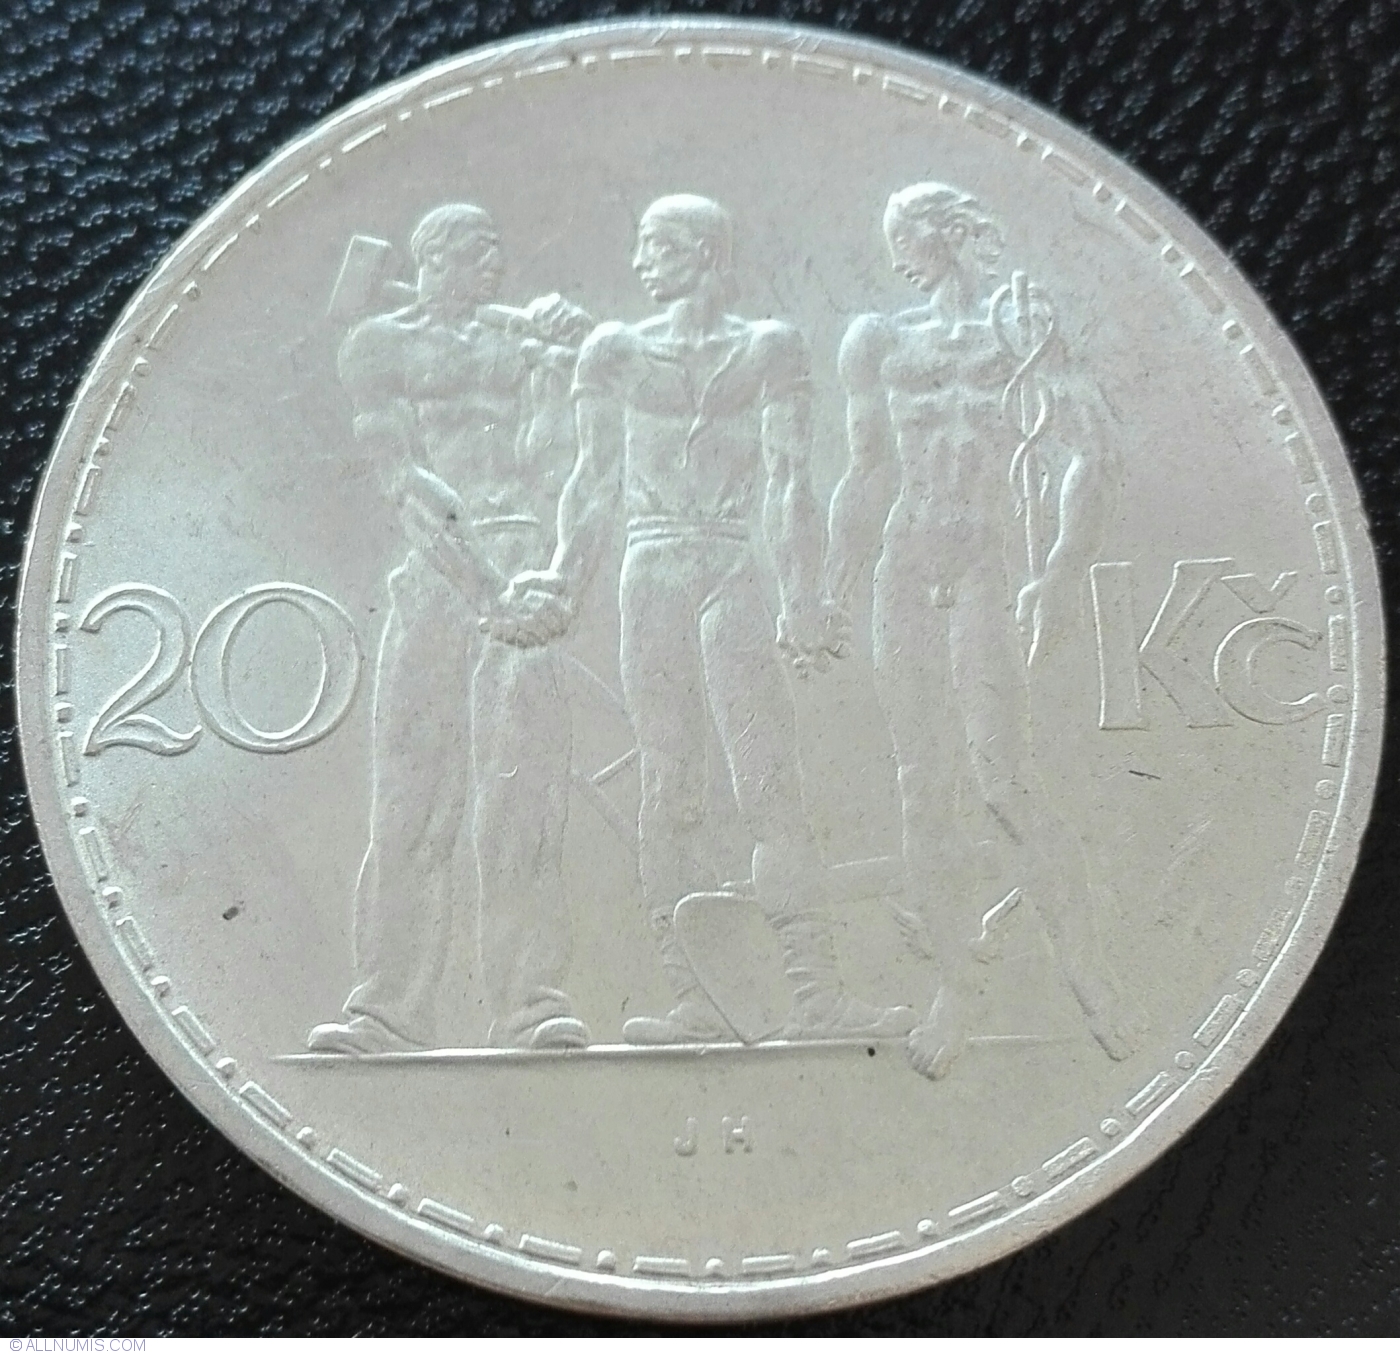 20 Kcs 1933 Czechoslovakia BU Silver - For Sale, Buy Now 